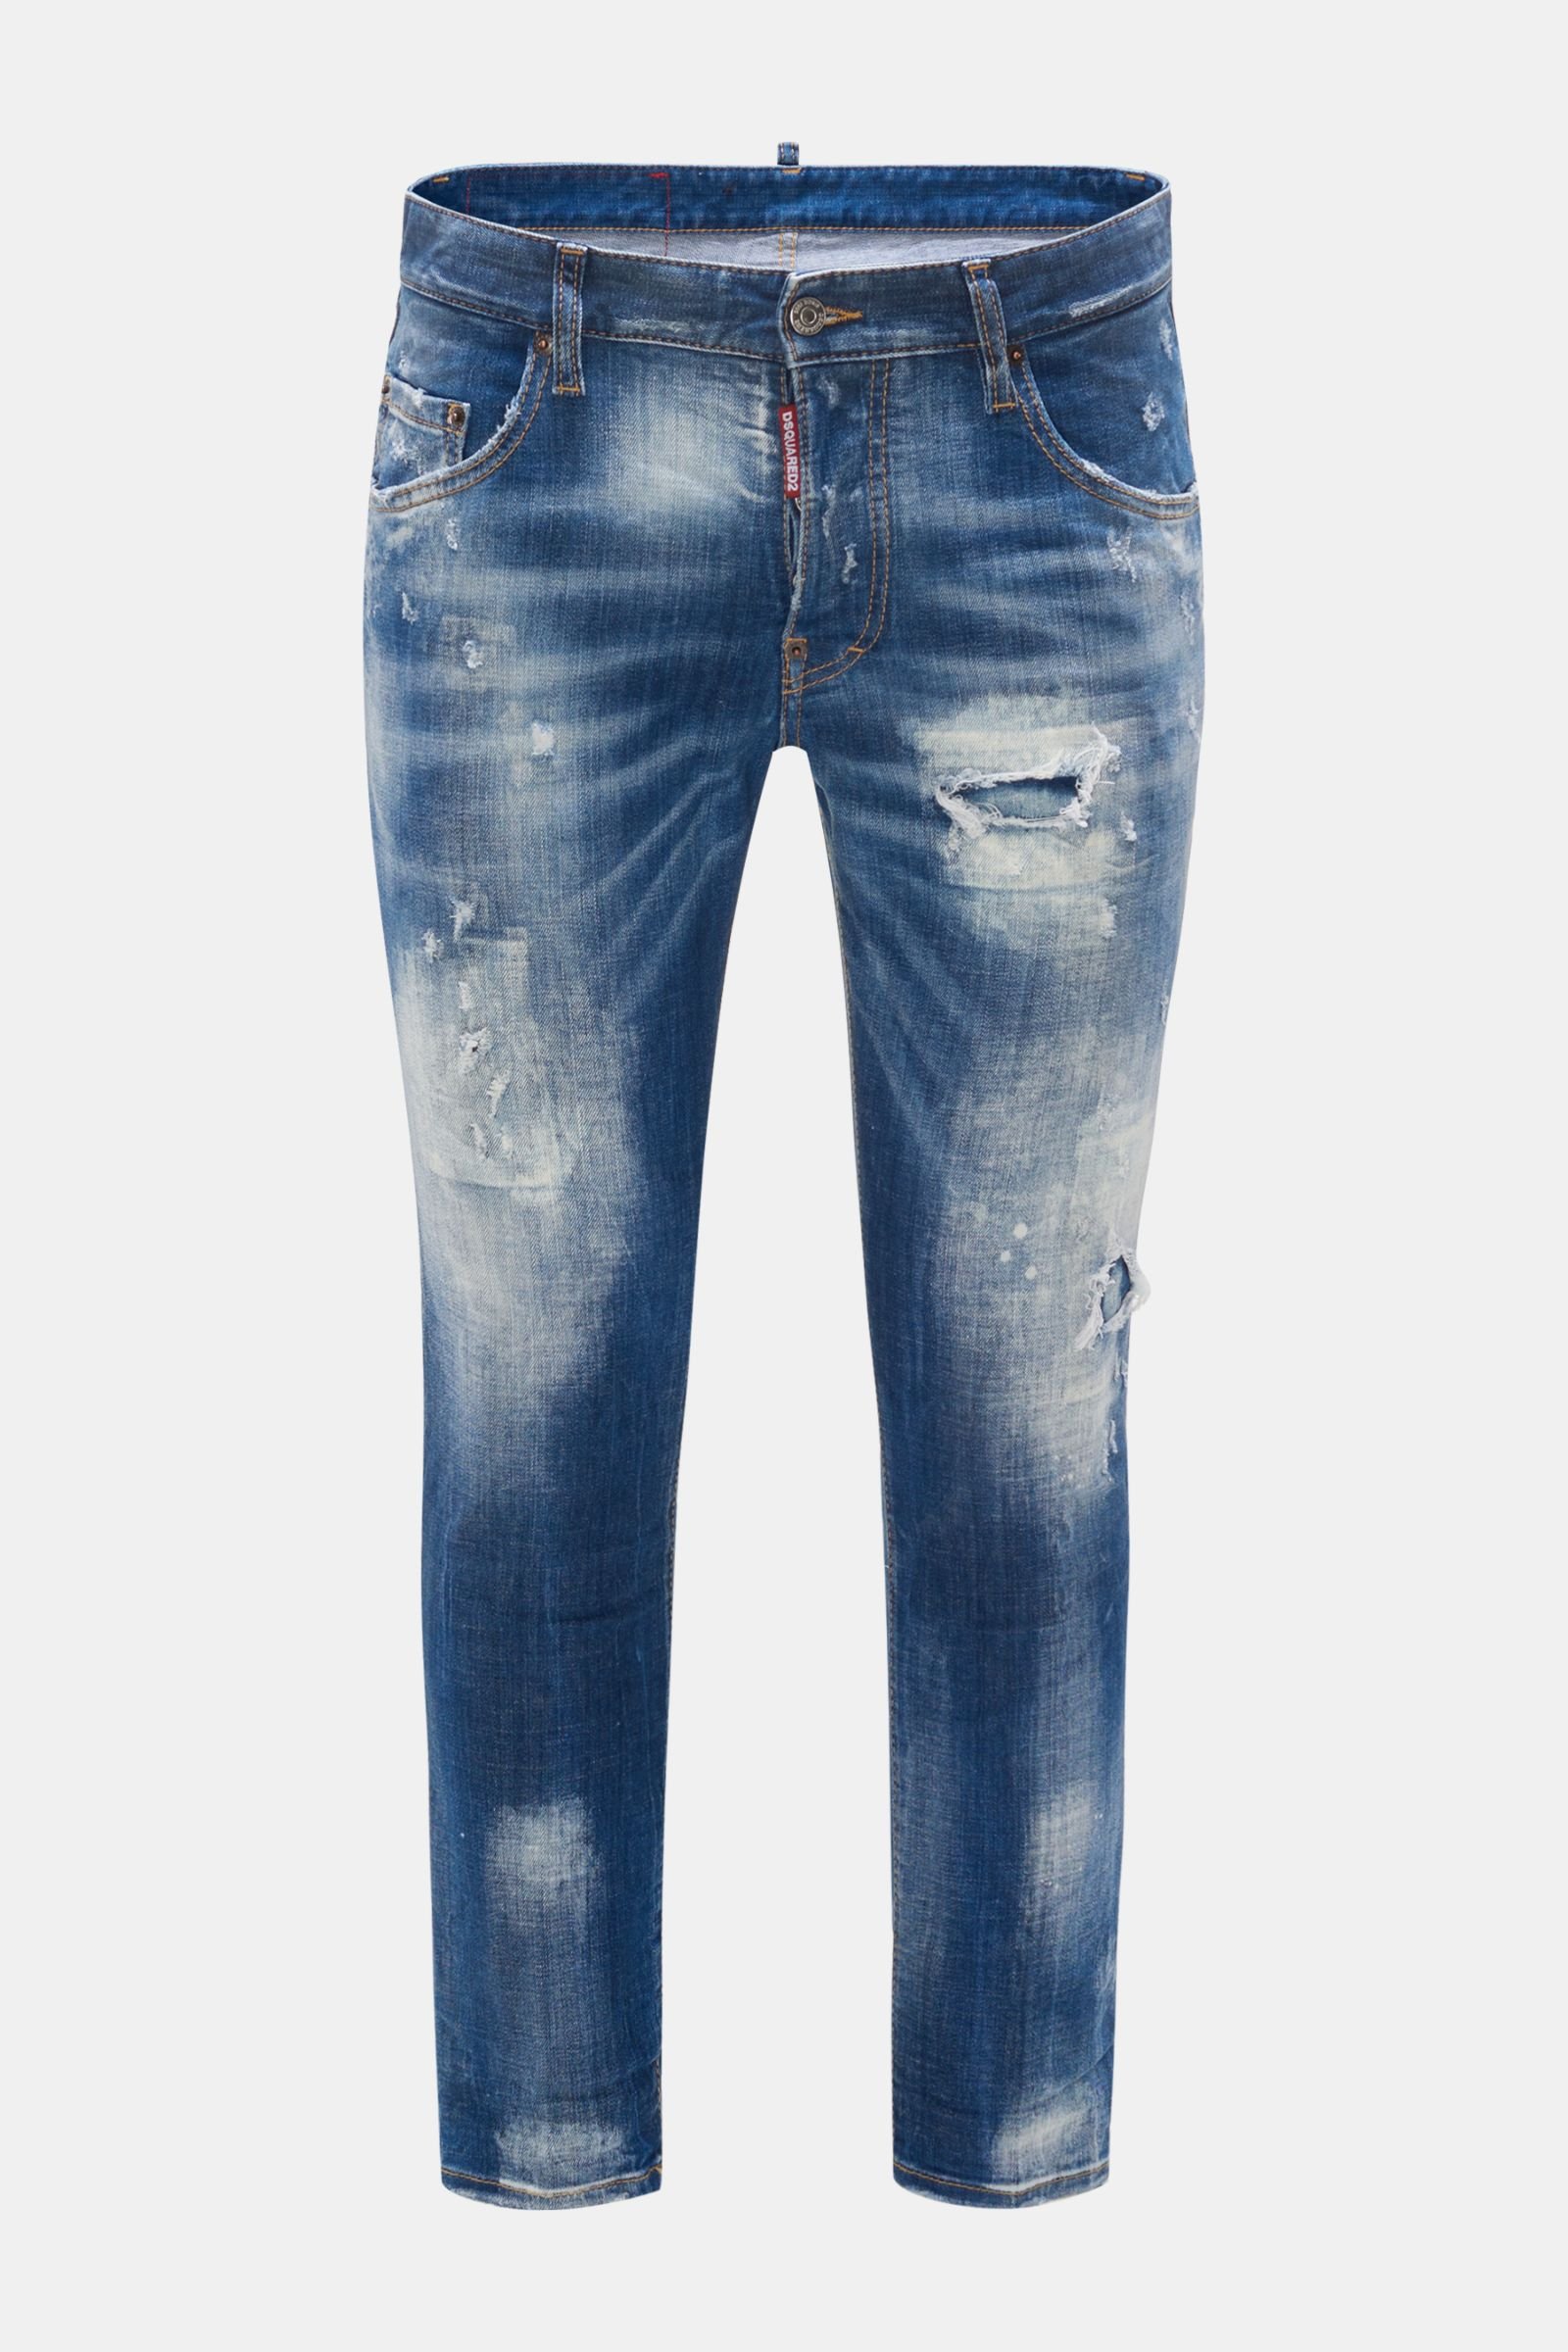 Jeans model 'Skater Jeans' dark blue